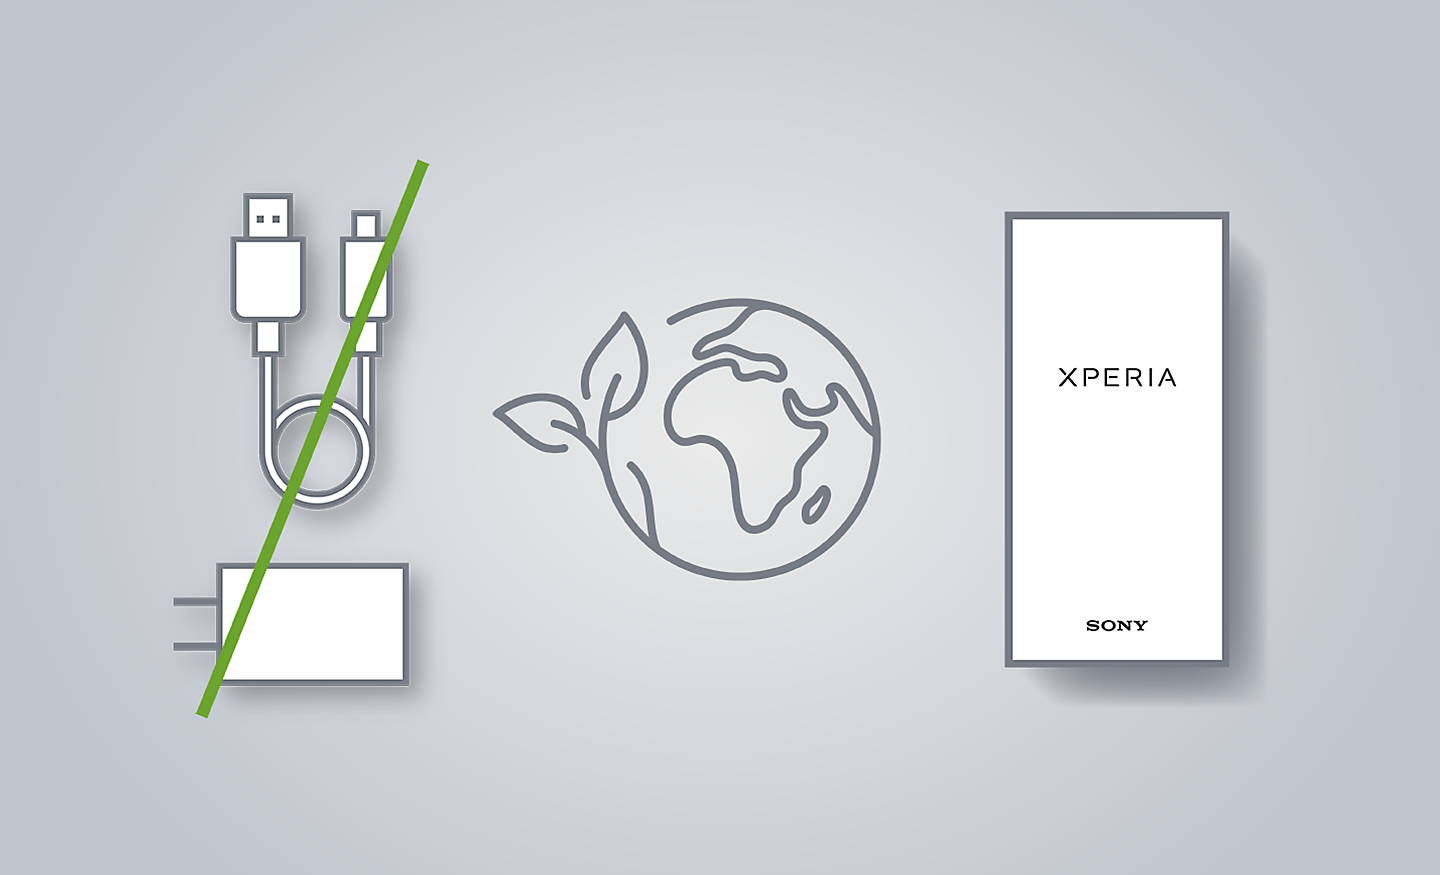 Slika s prikazom naprave Xperia, ikone sveta in prečrtanega polnilnika